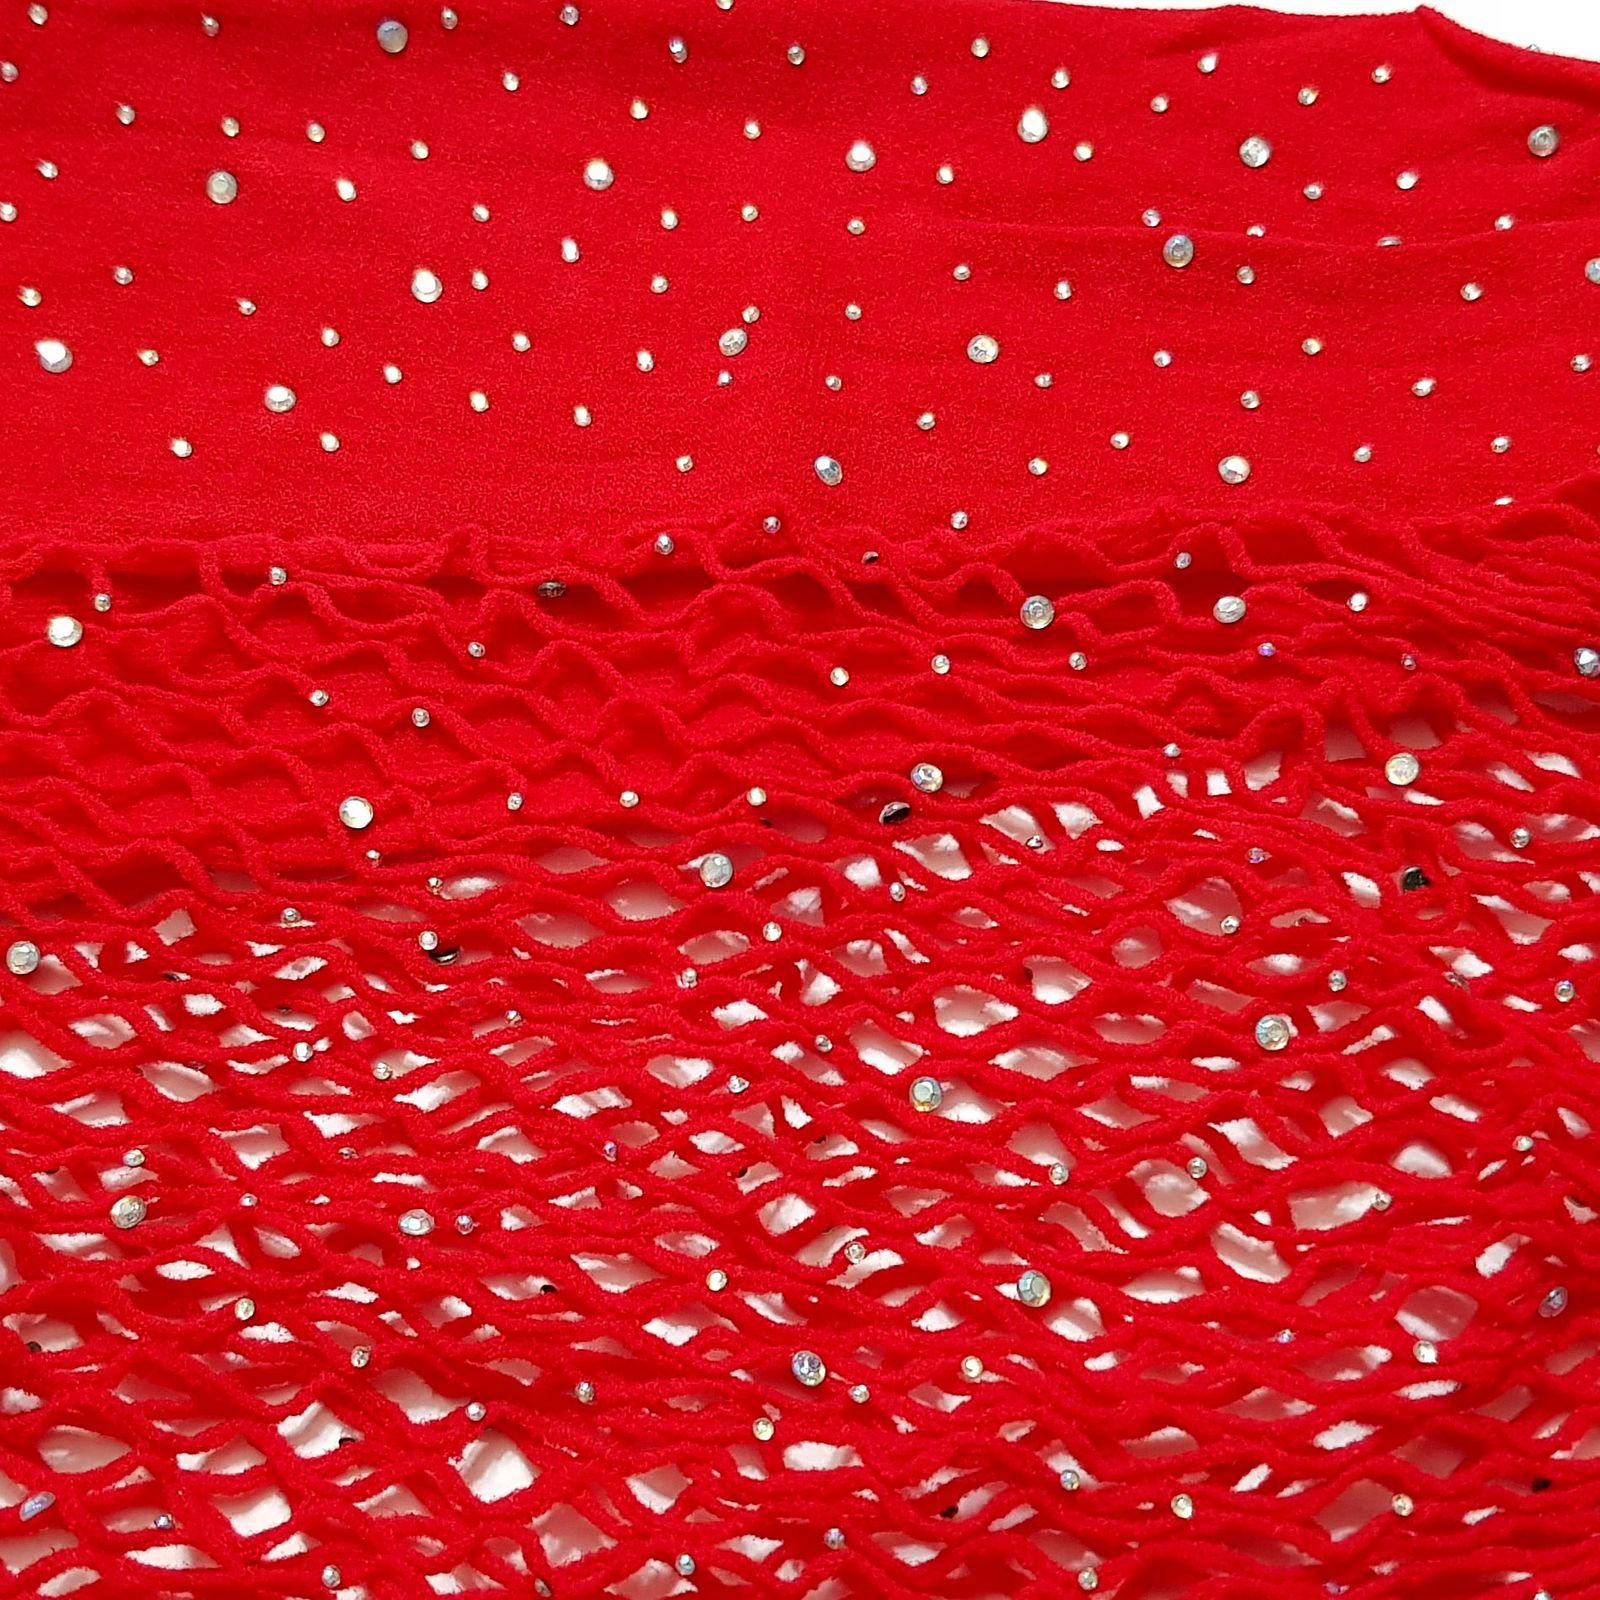 لباس خواب زنانه ماییلدا کد 4593-6893 رنگ قرمز -  - 4